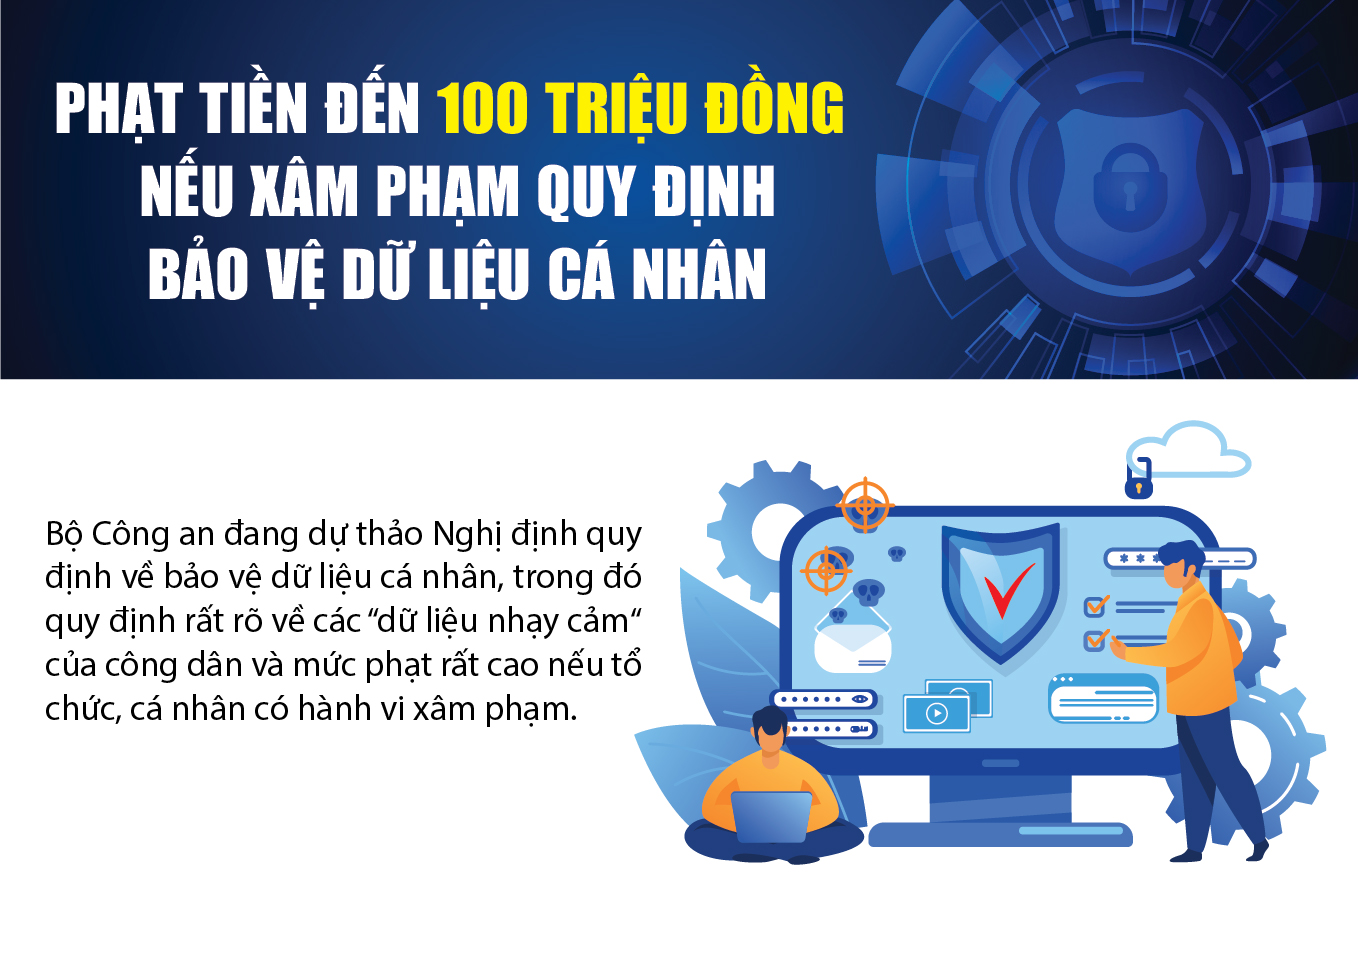 [Infographic] - Phạt tiền đến 100 triệu đồng nếu xâm phạm quy định bảo vệ dữ liệu cá nhân